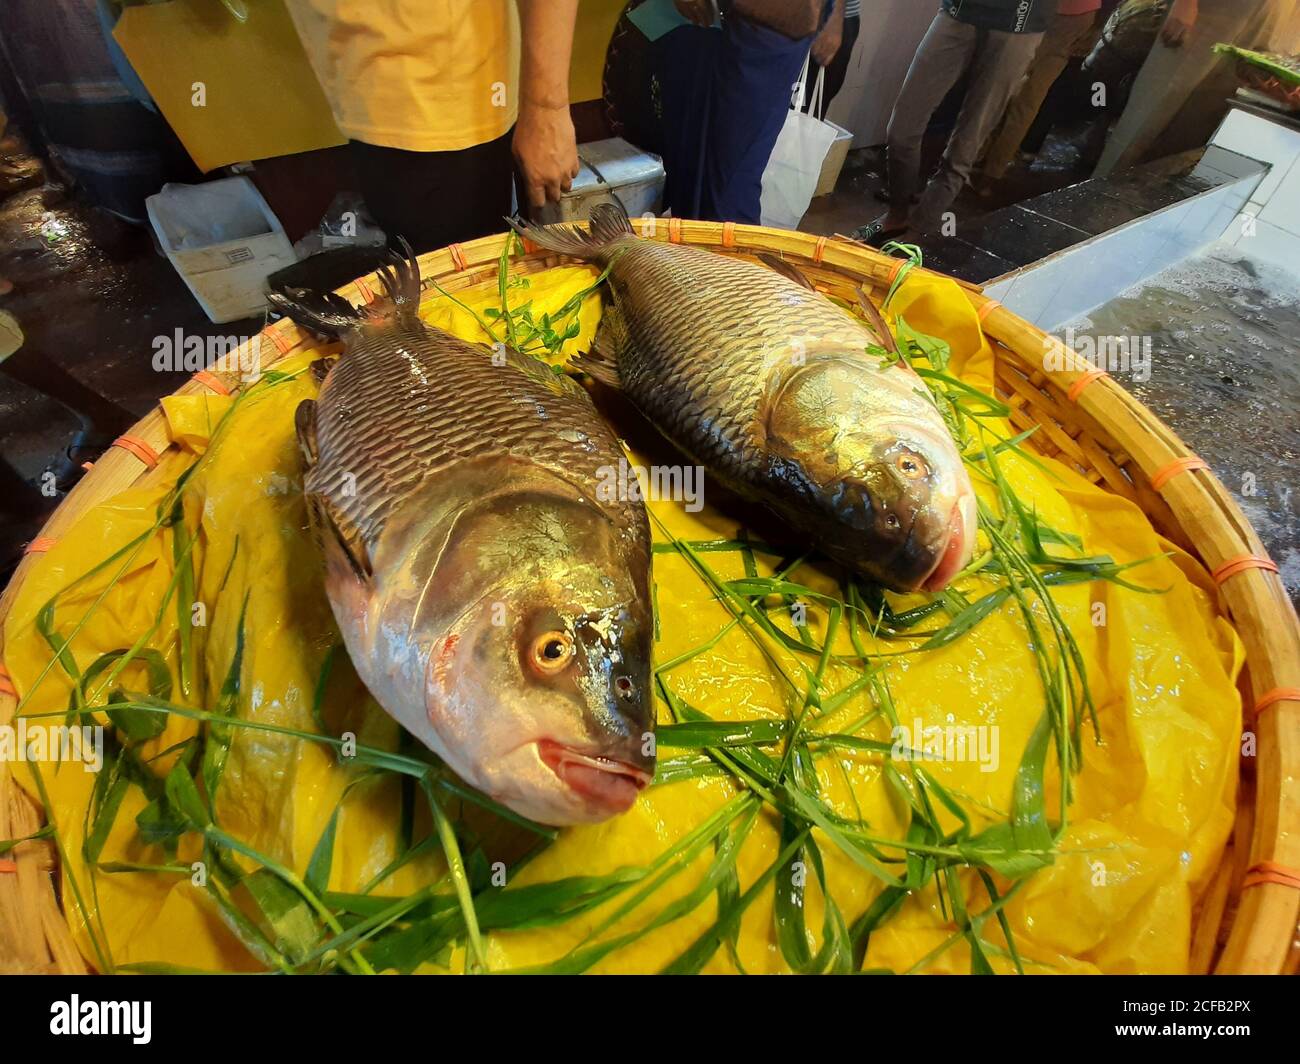 Fisch ist die Hauptquelle von tierischem Protein für die Menschen in Bangladesch. Fischverkäufer verkaufen Fischfang aus frischem und Brackwasser. Stockfoto